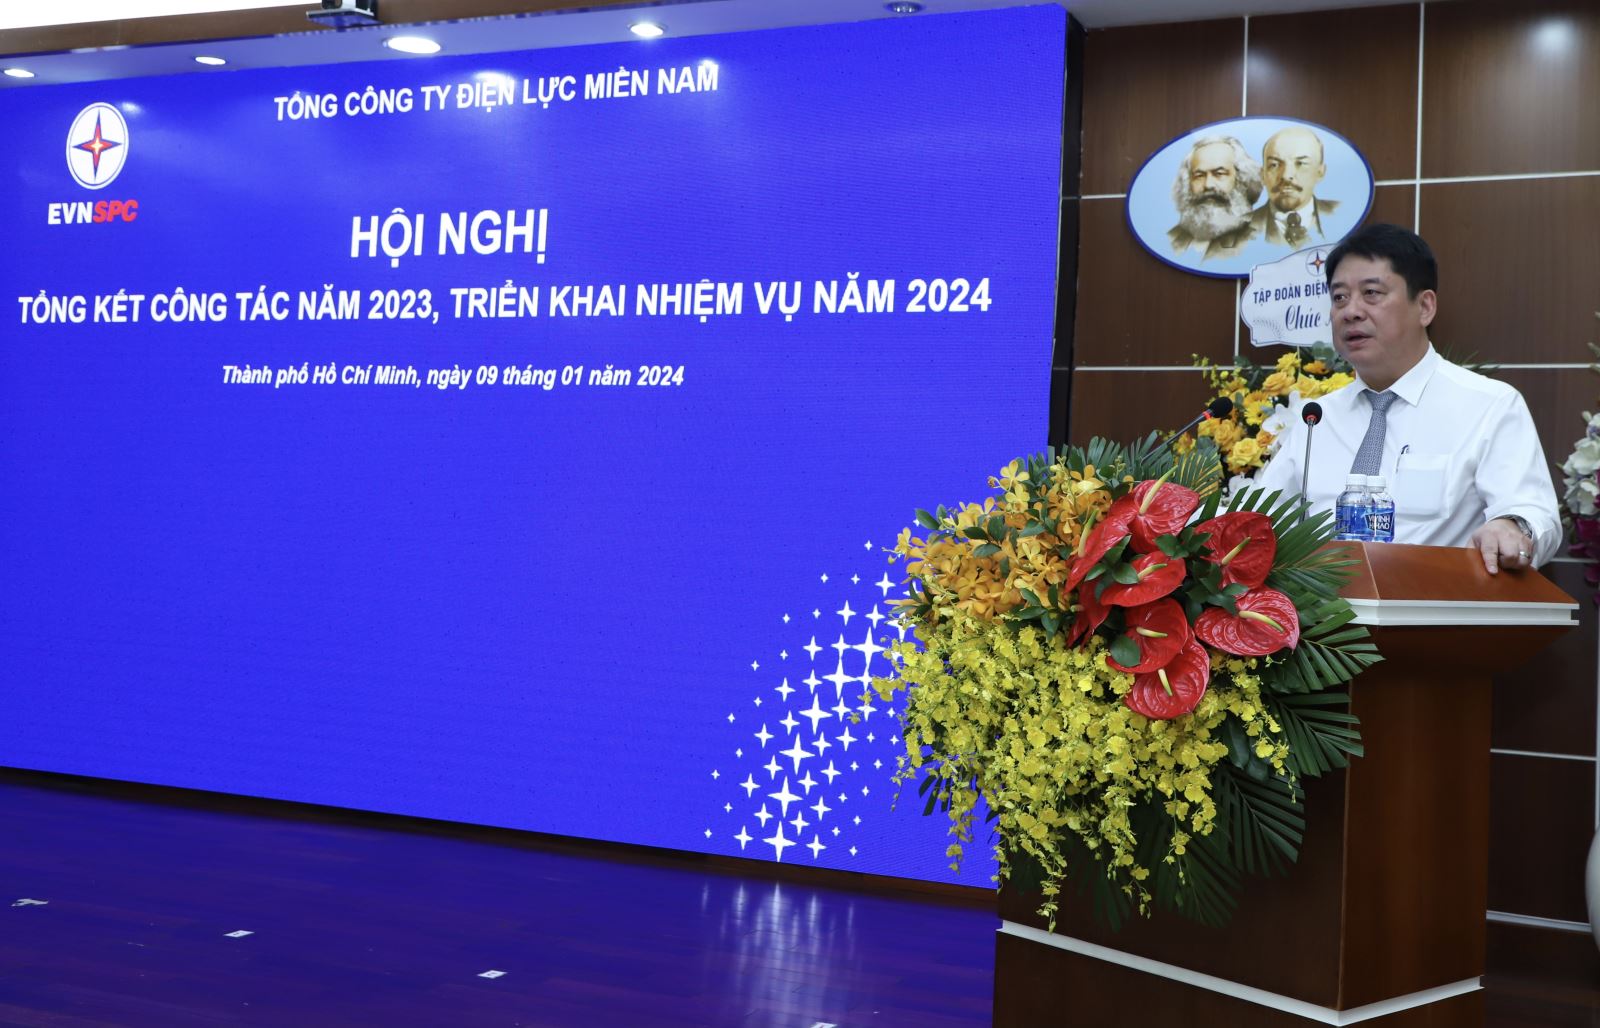 Tổng giám đốc EVN Nguyễn Anh Tuấn đánh giá cao nỗ lực và thành quả đạt được EVNSPC  trong năm 2023.